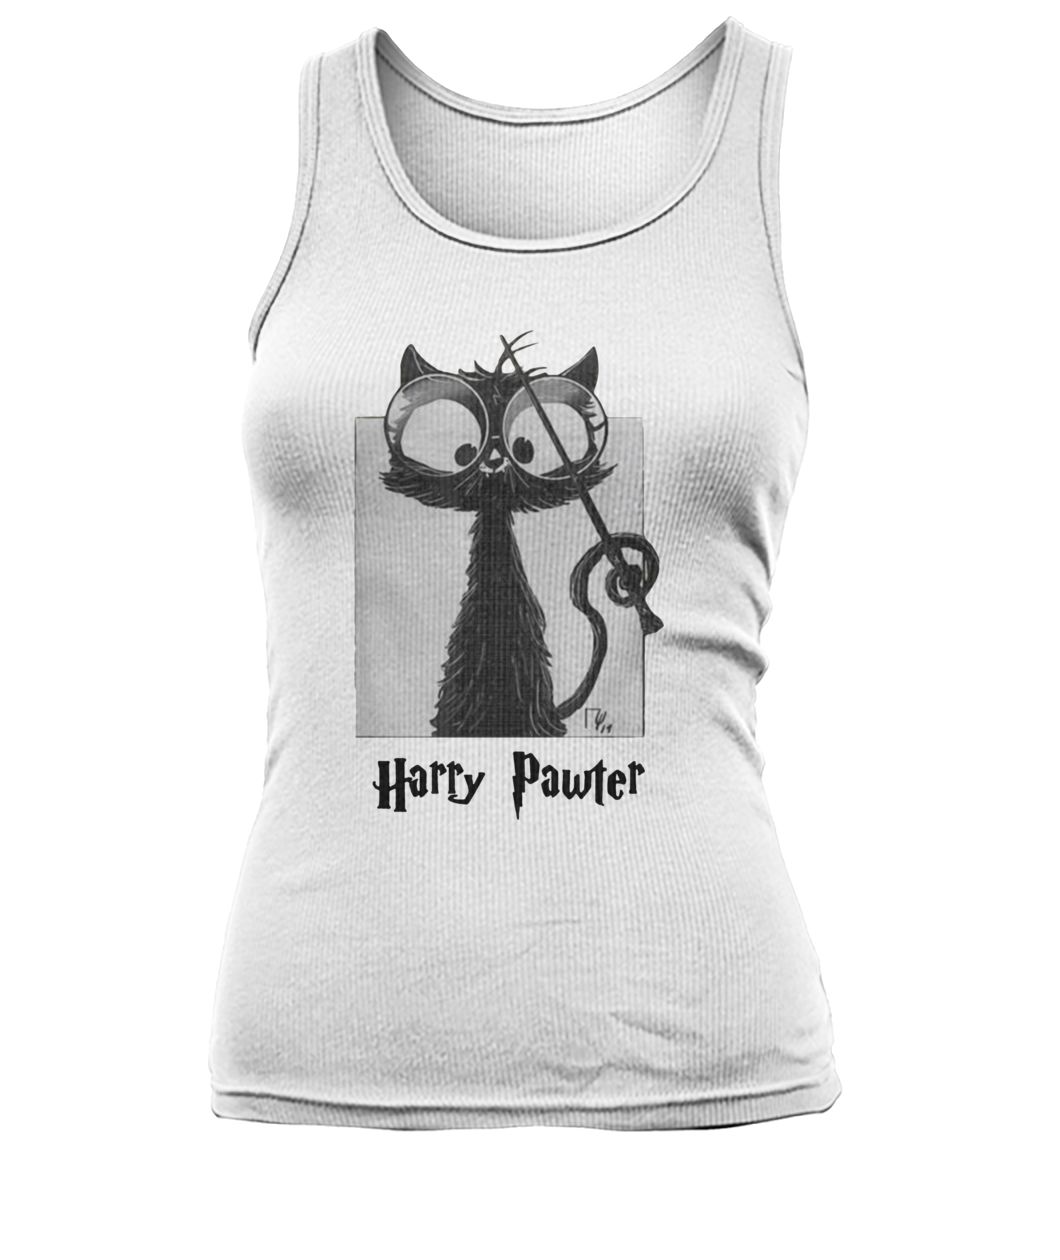 Harry potter harry pawter women's tank top